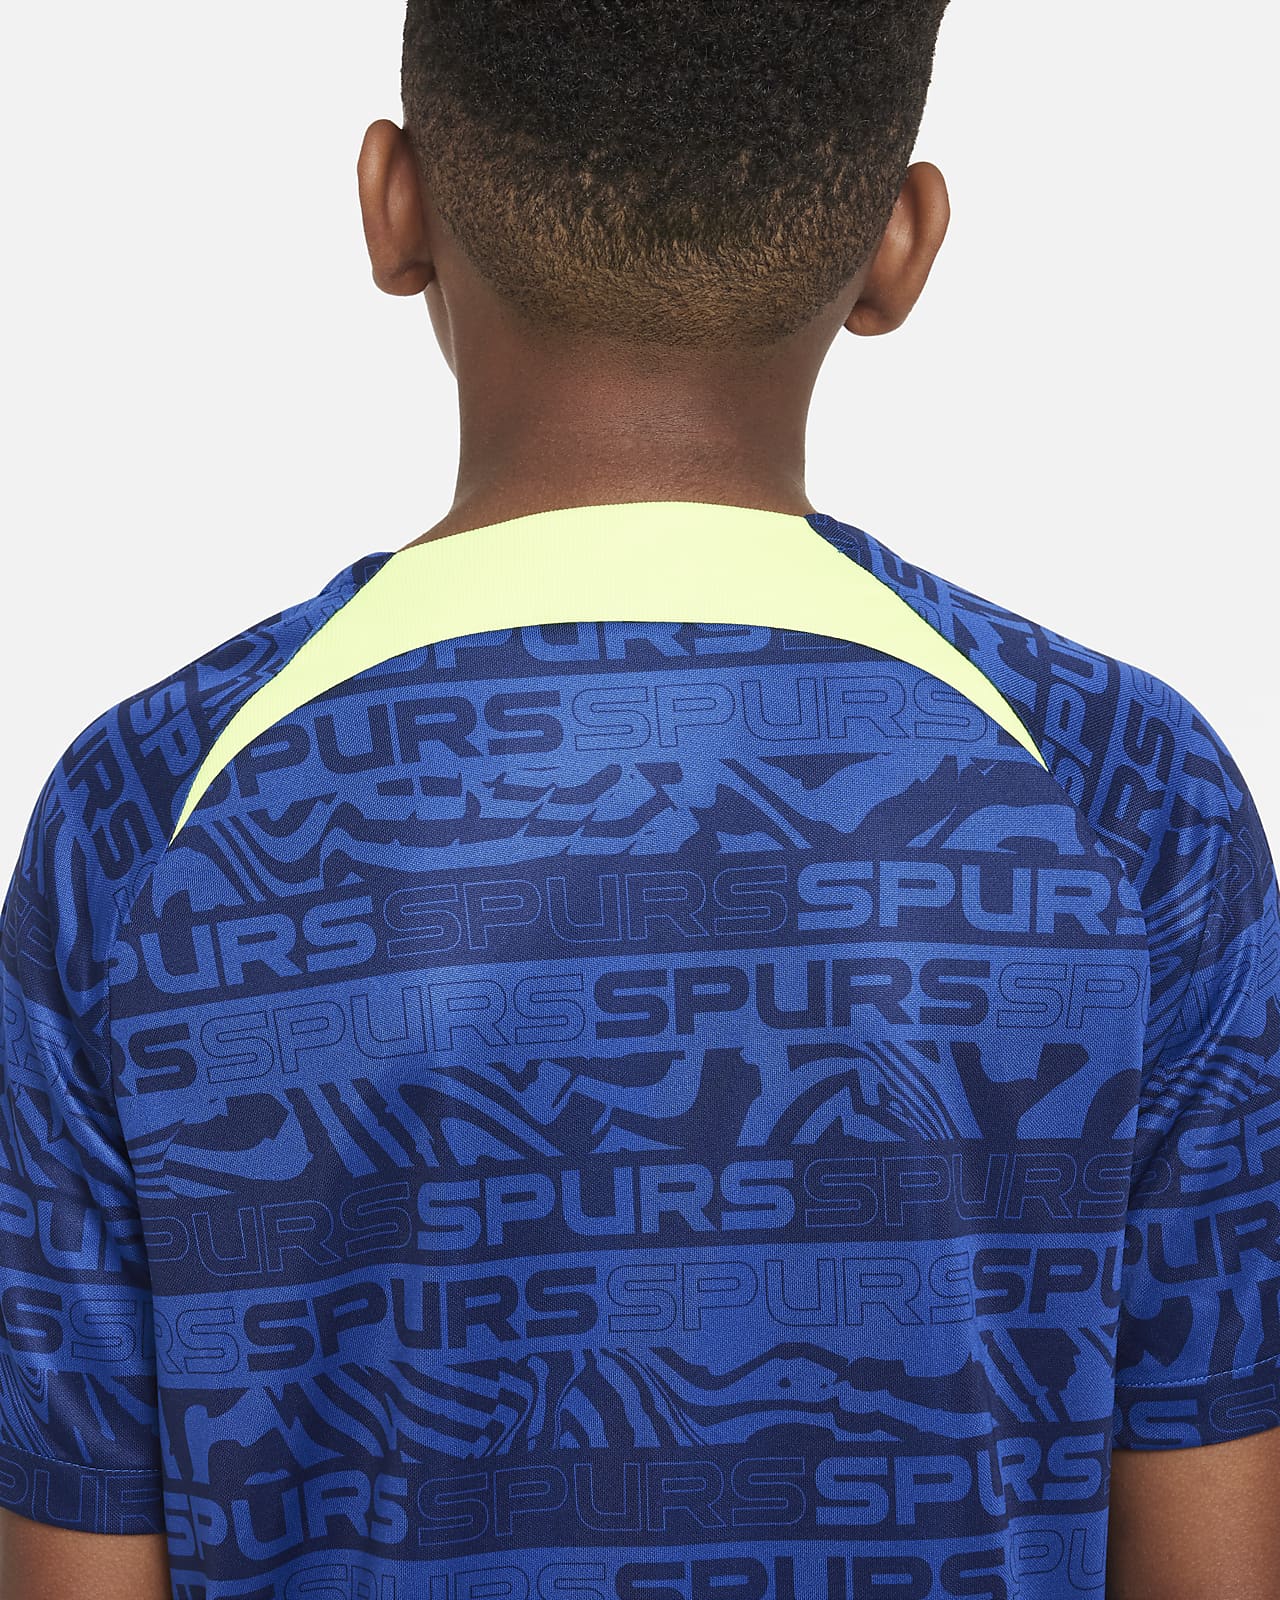 Nike Tottenham Hotspur Zipper Sweatshirt Kit(Top+Pants) 2021/22